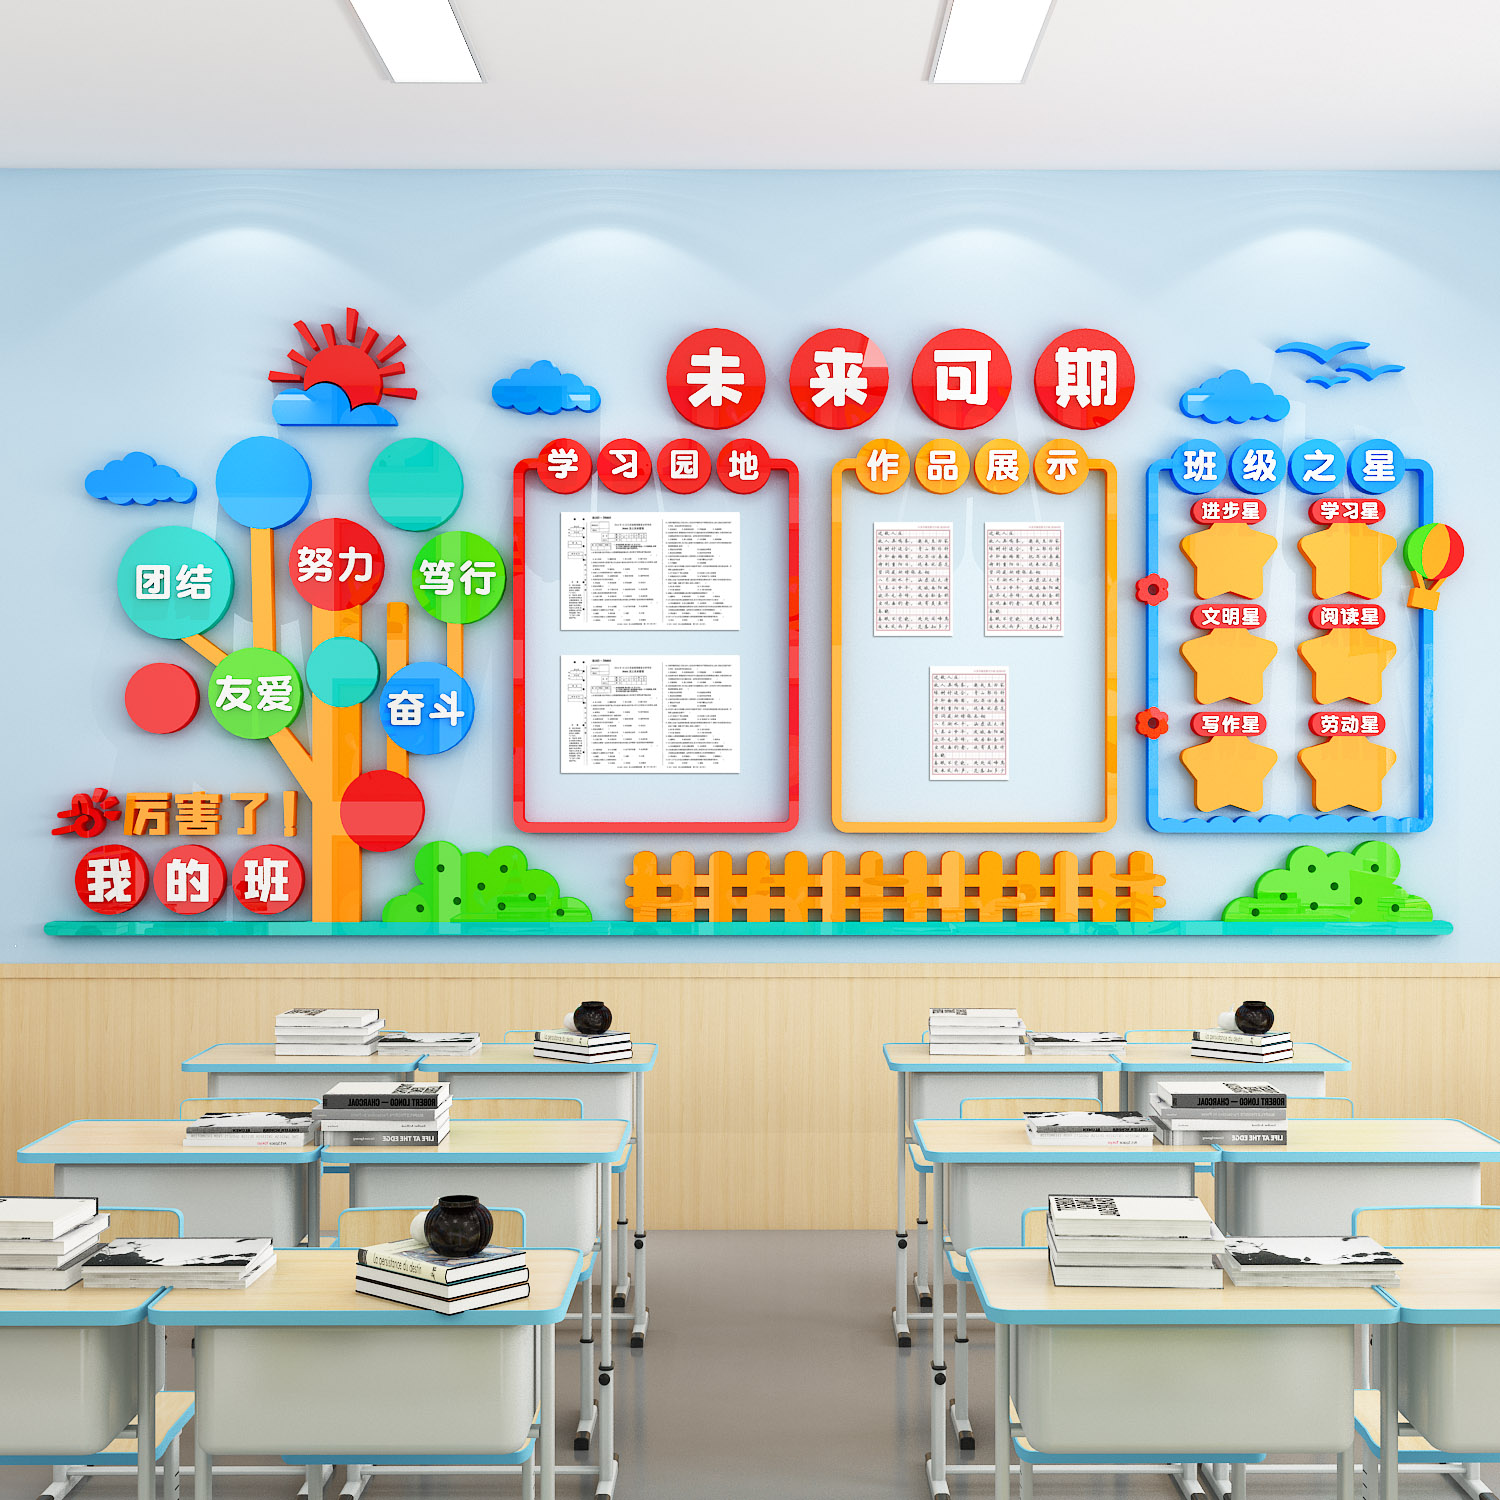 班级文化墙布置学习园地作品展示班级之星墙贴立体中小学教室装饰